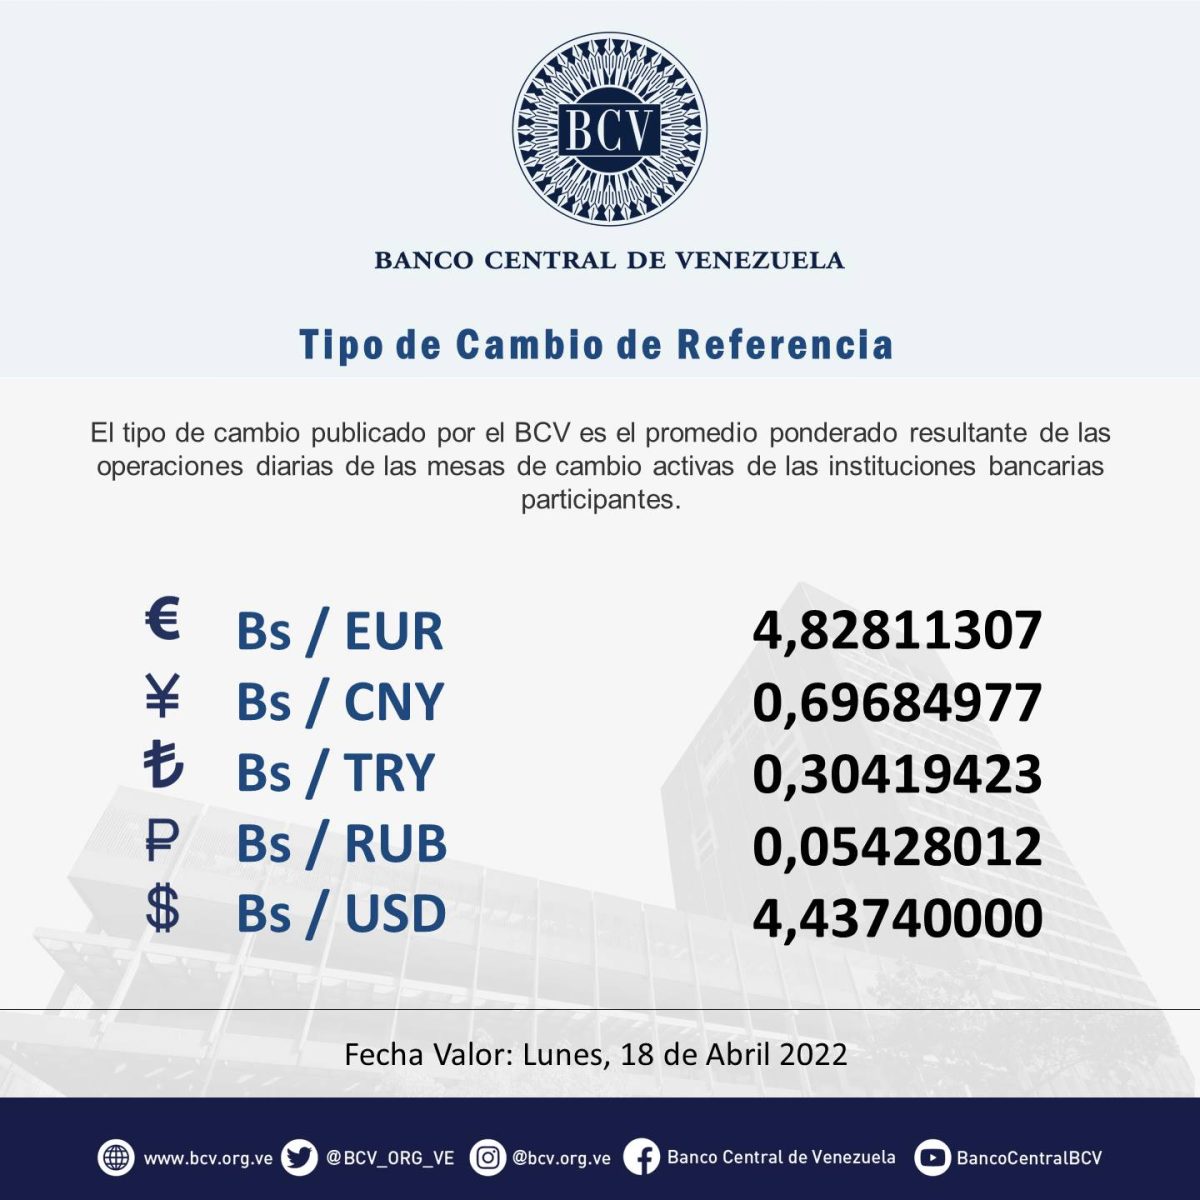 dolartoday en venezuela precio del dolar jueves 14 de abril de 2022 laverdaddemonagas.com bcv4